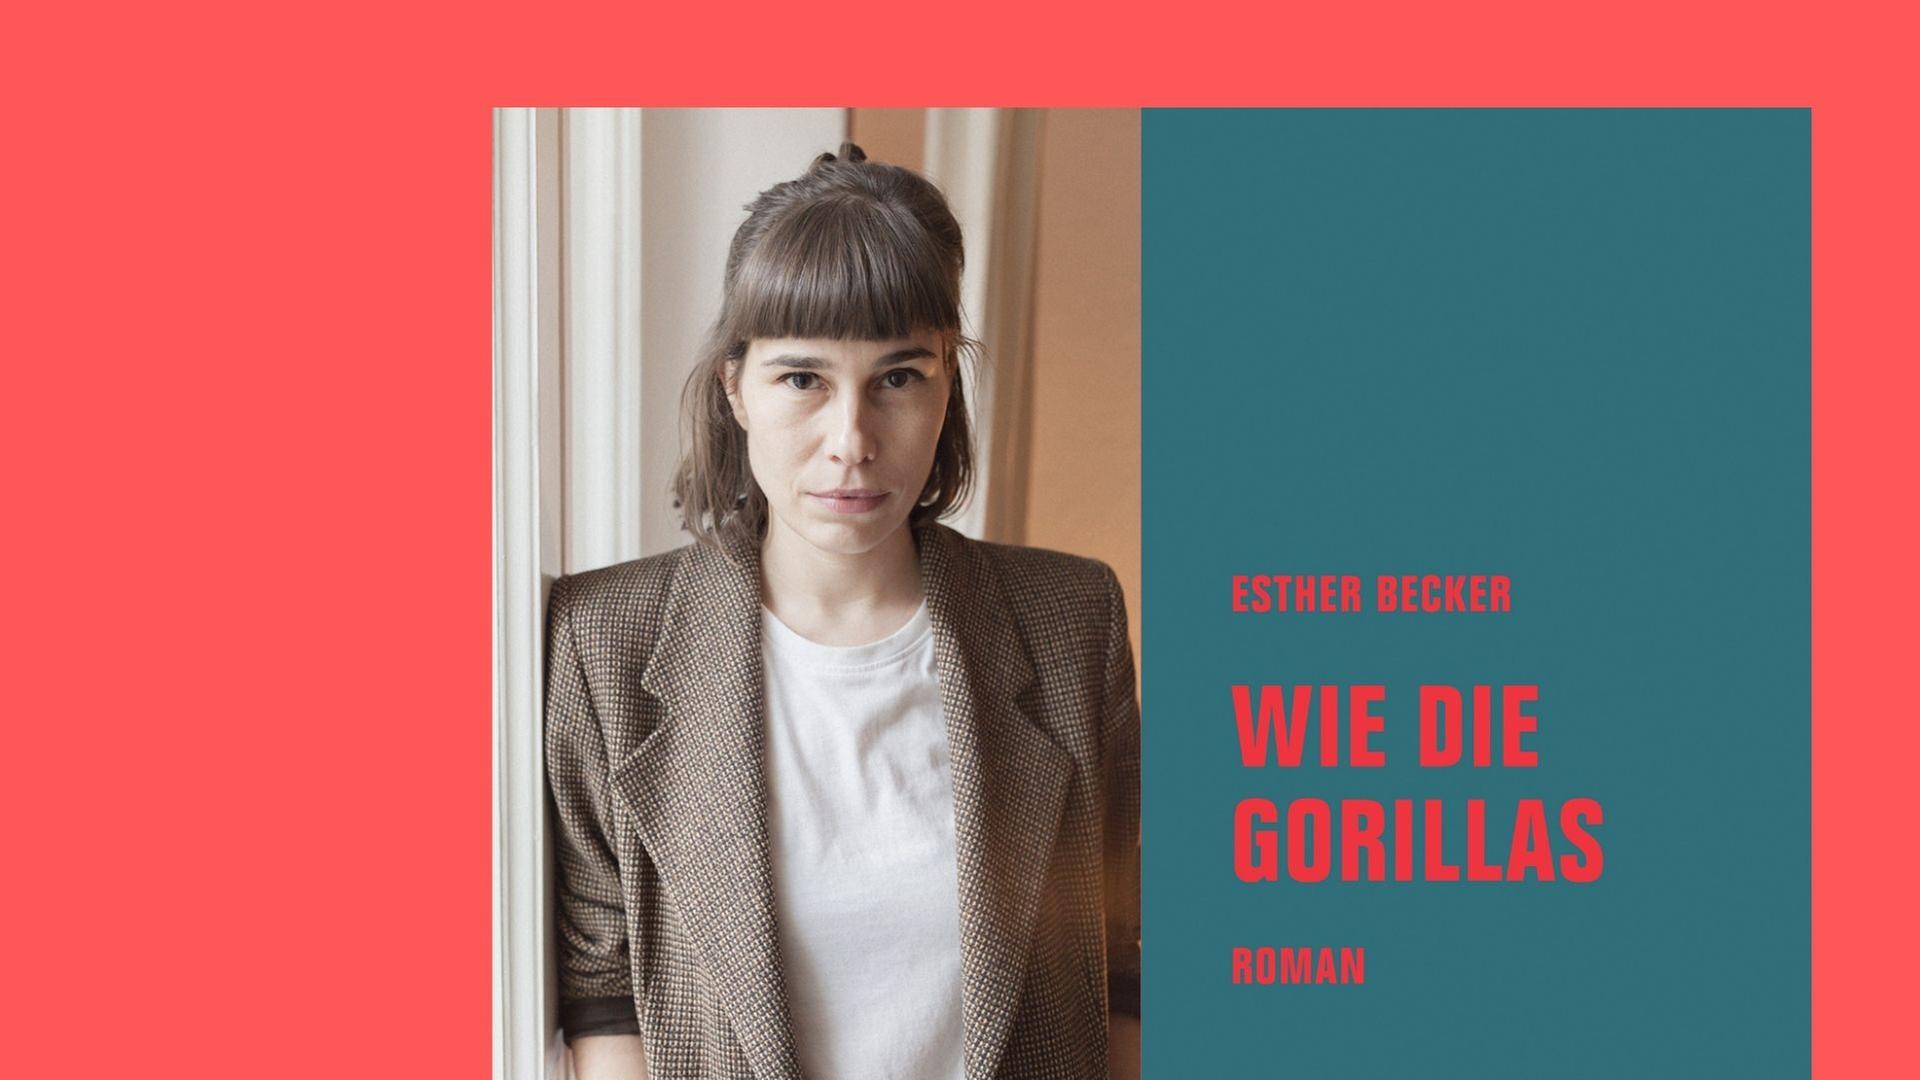 Portraitfoto der Autorin Esther Becker und das Buchcover zu ihrem Roman "Wie die Gorillas"